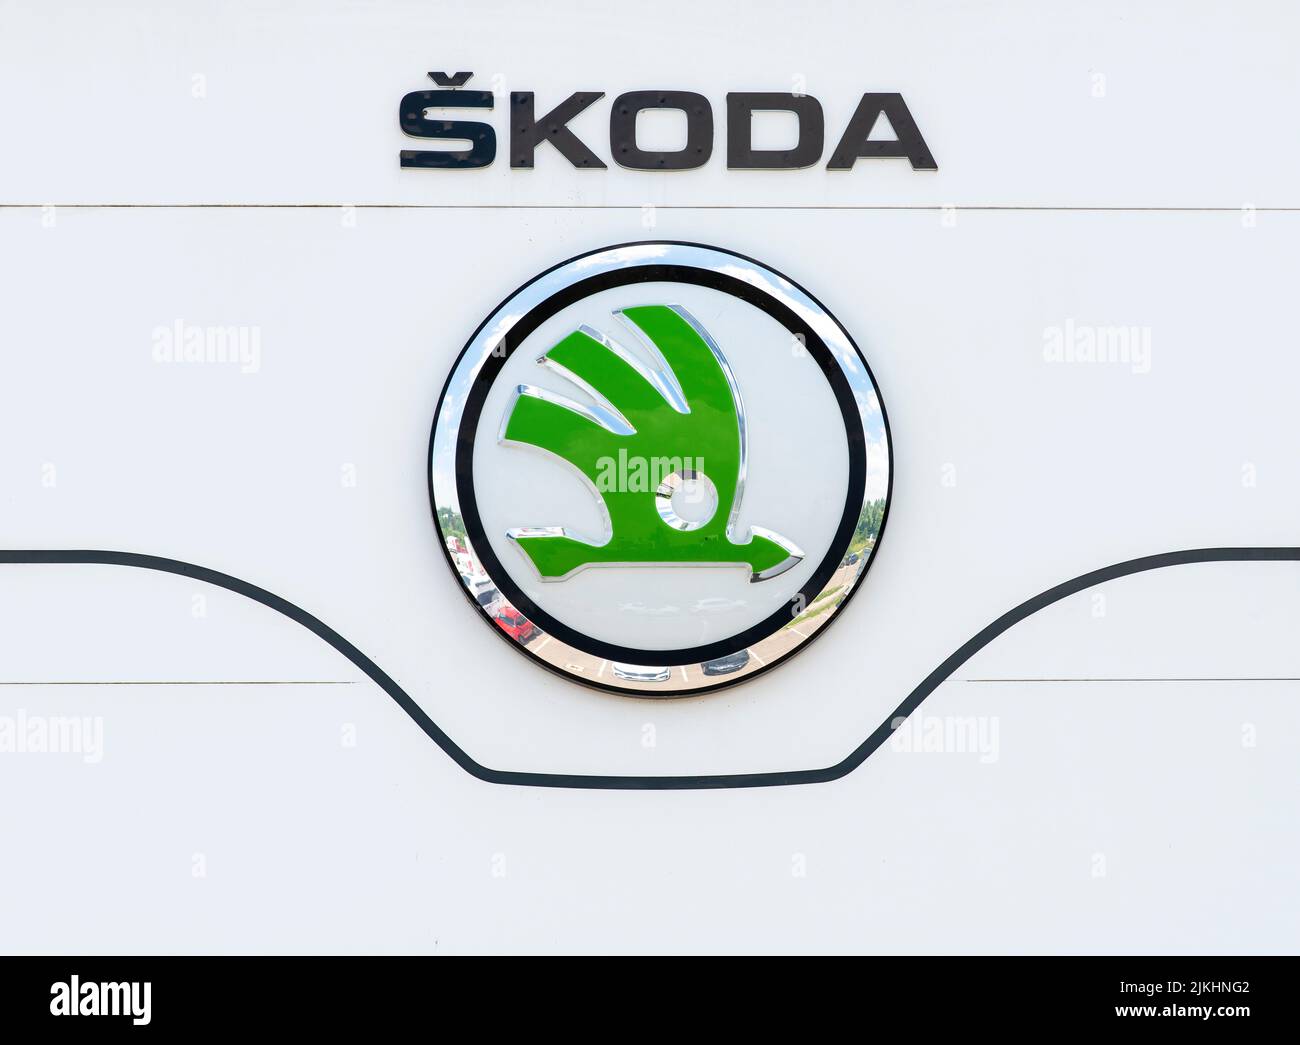 Company sign and logo of the car company Skoda Stock Photo